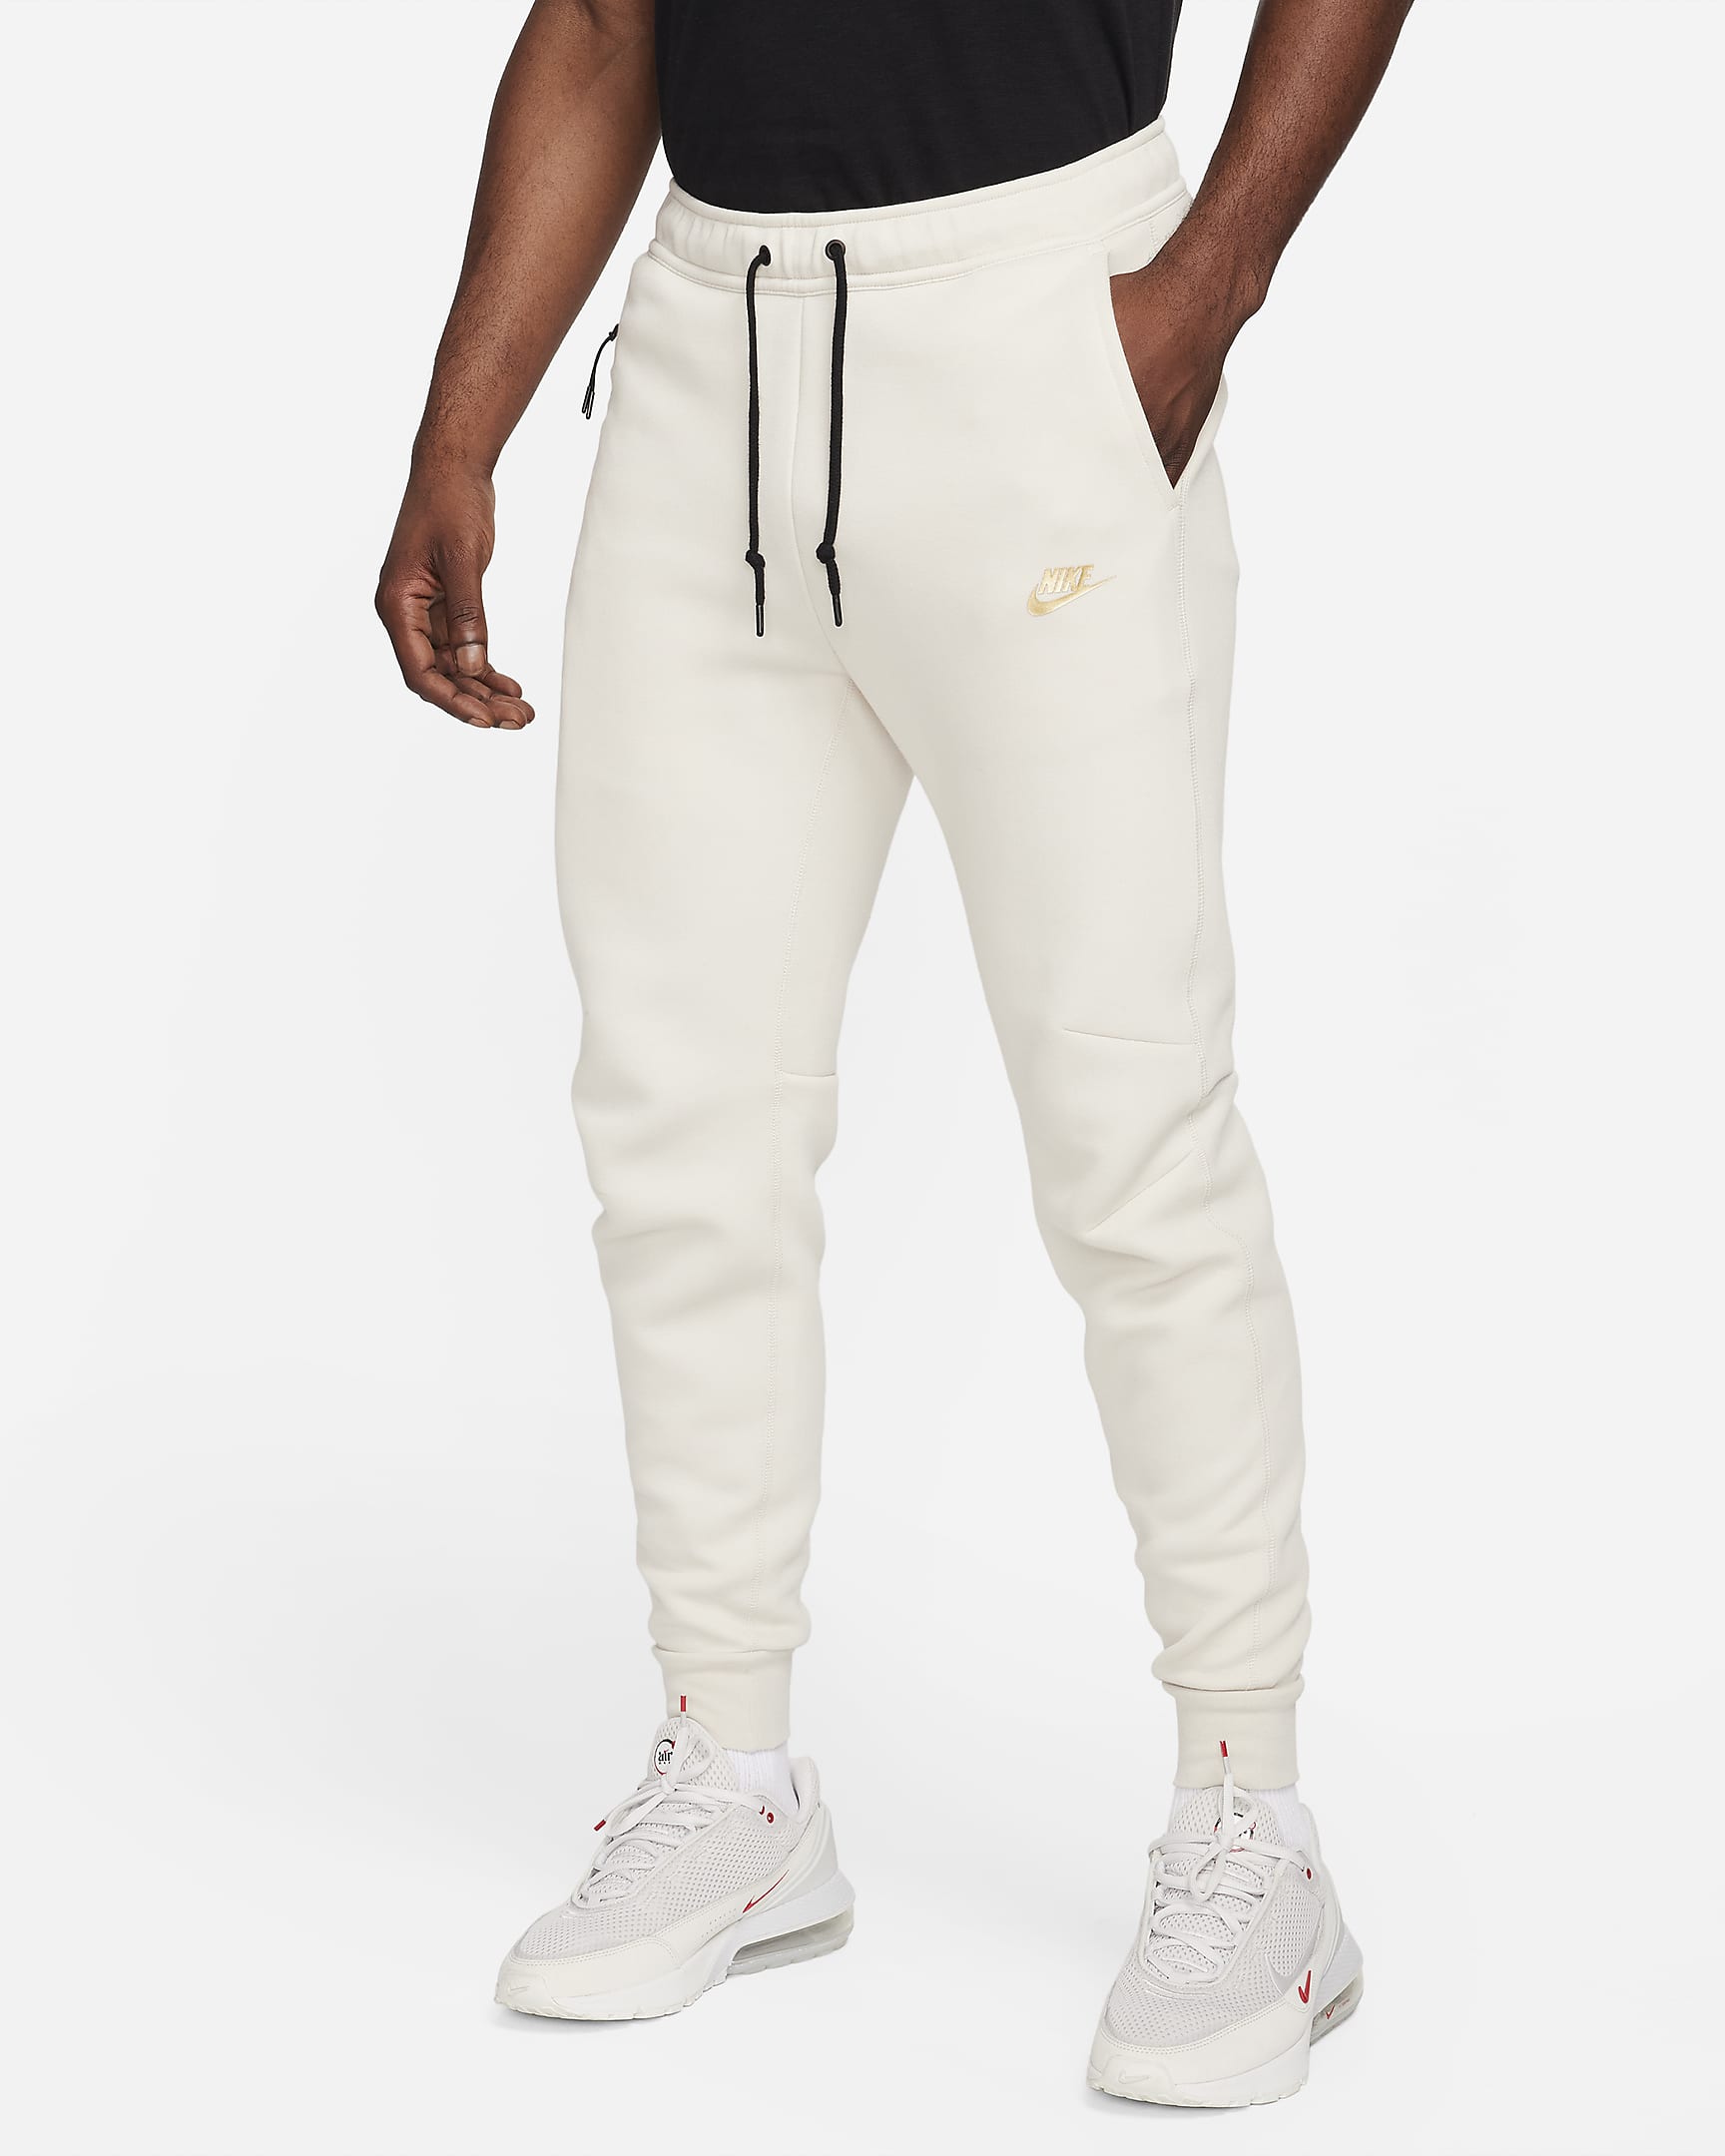 Nike Sportswear Tech Fleece Men's Joggers - Light Orewood Brown/Metallic Gold